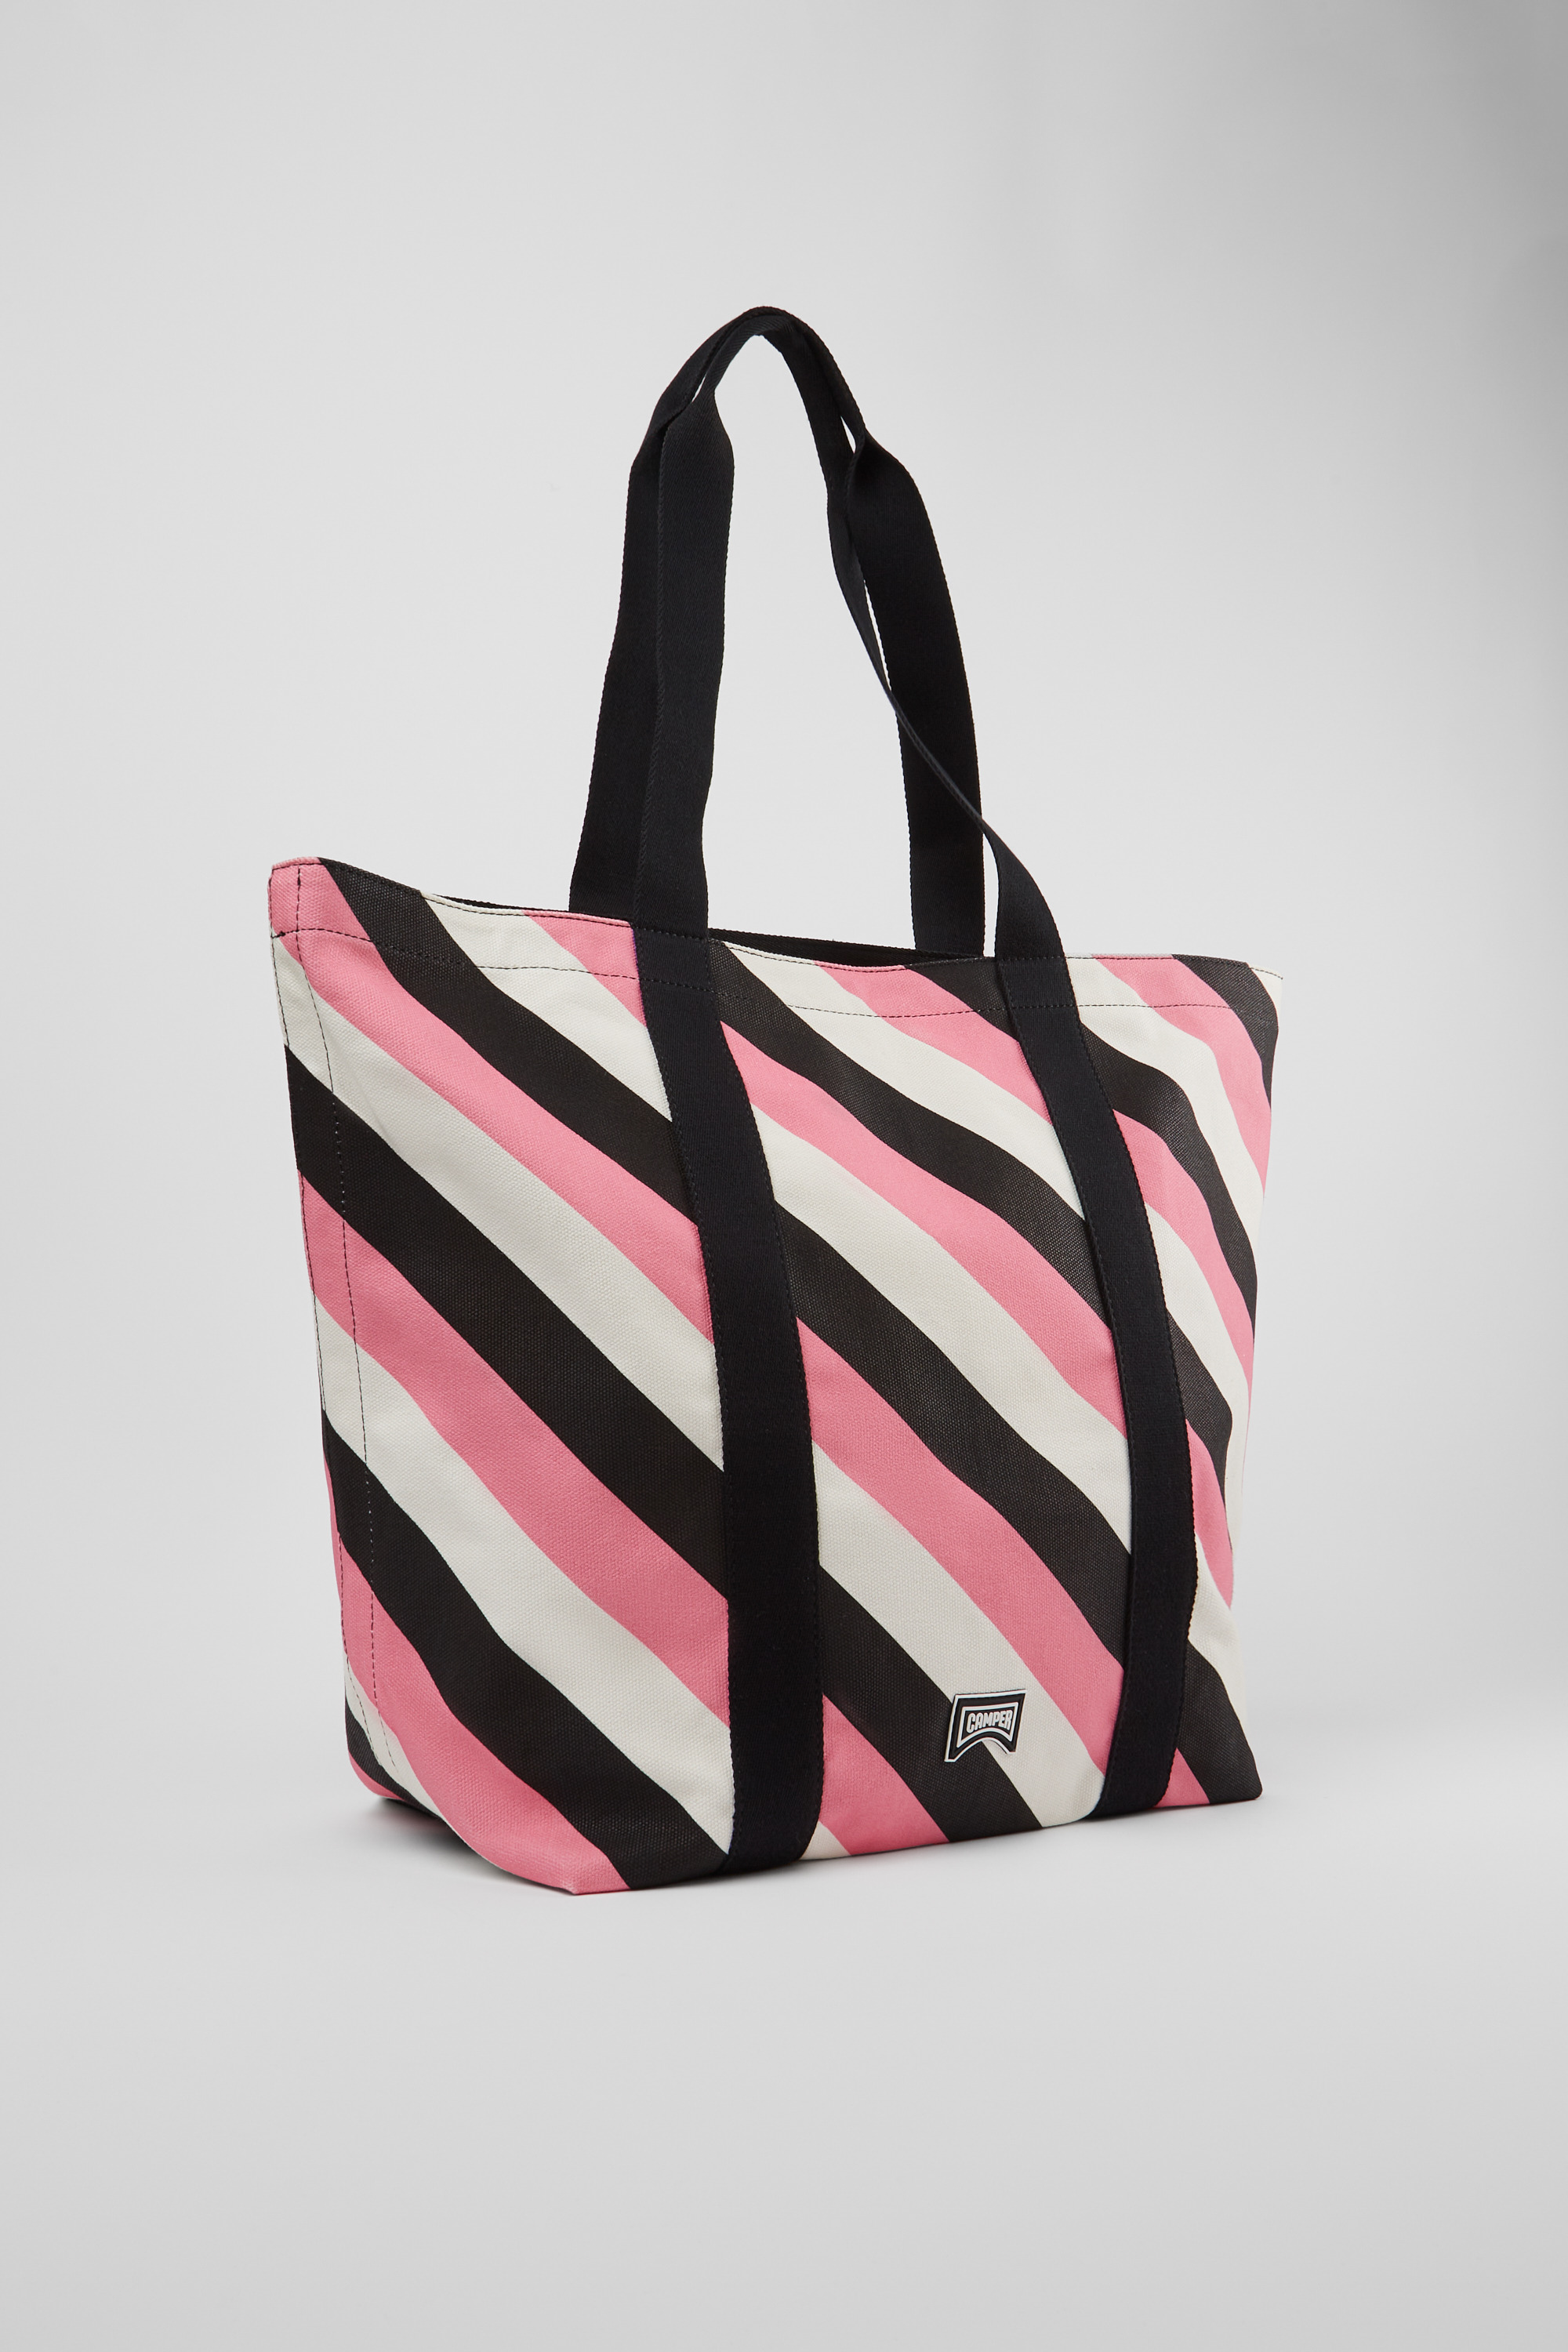 Victoria Secret Tote Bag Pink & White Striped